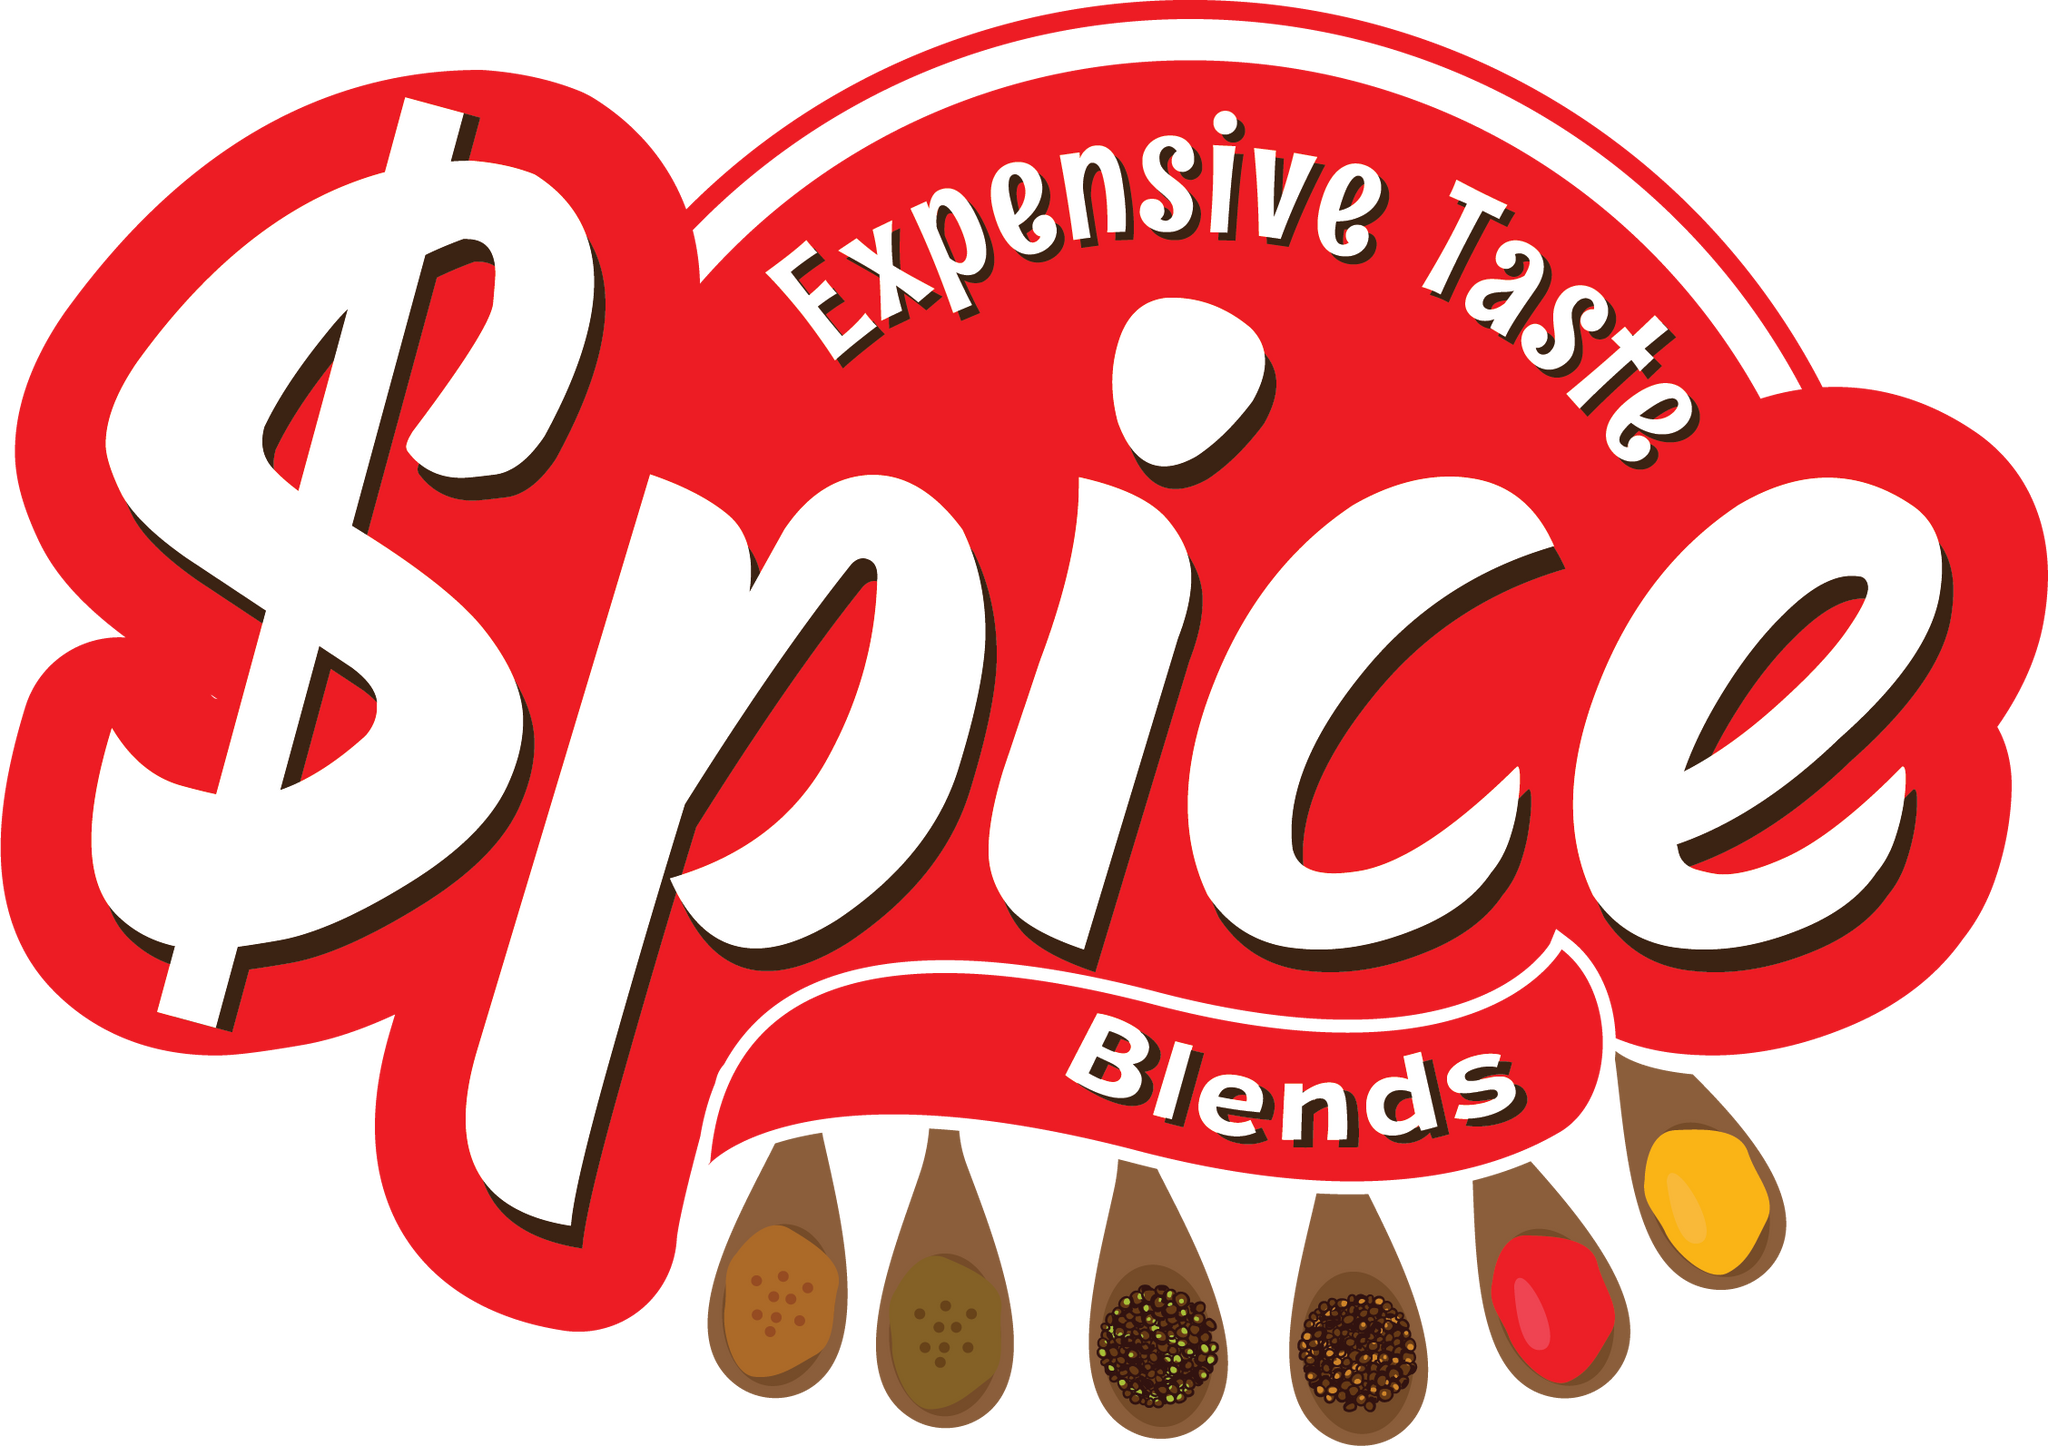 spices mobile logo